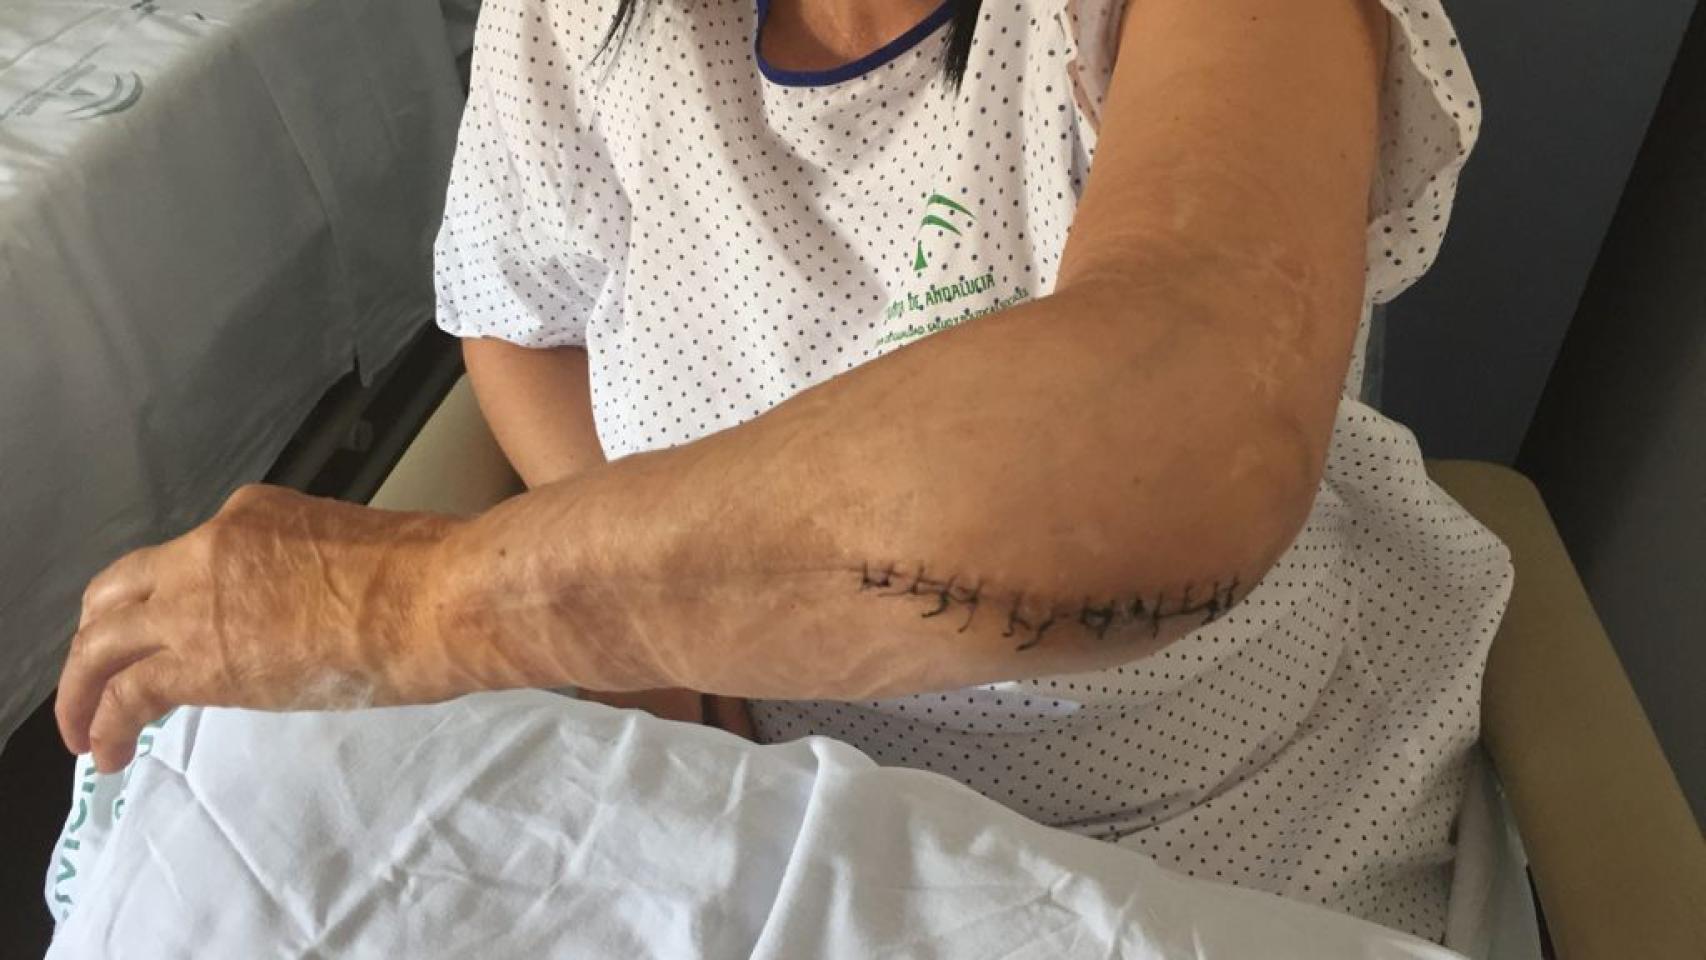 Carmen mostrando los injertos de piel y las secuelas en su brazo izquierdo tras uno de sus ingresos hospitalarios.